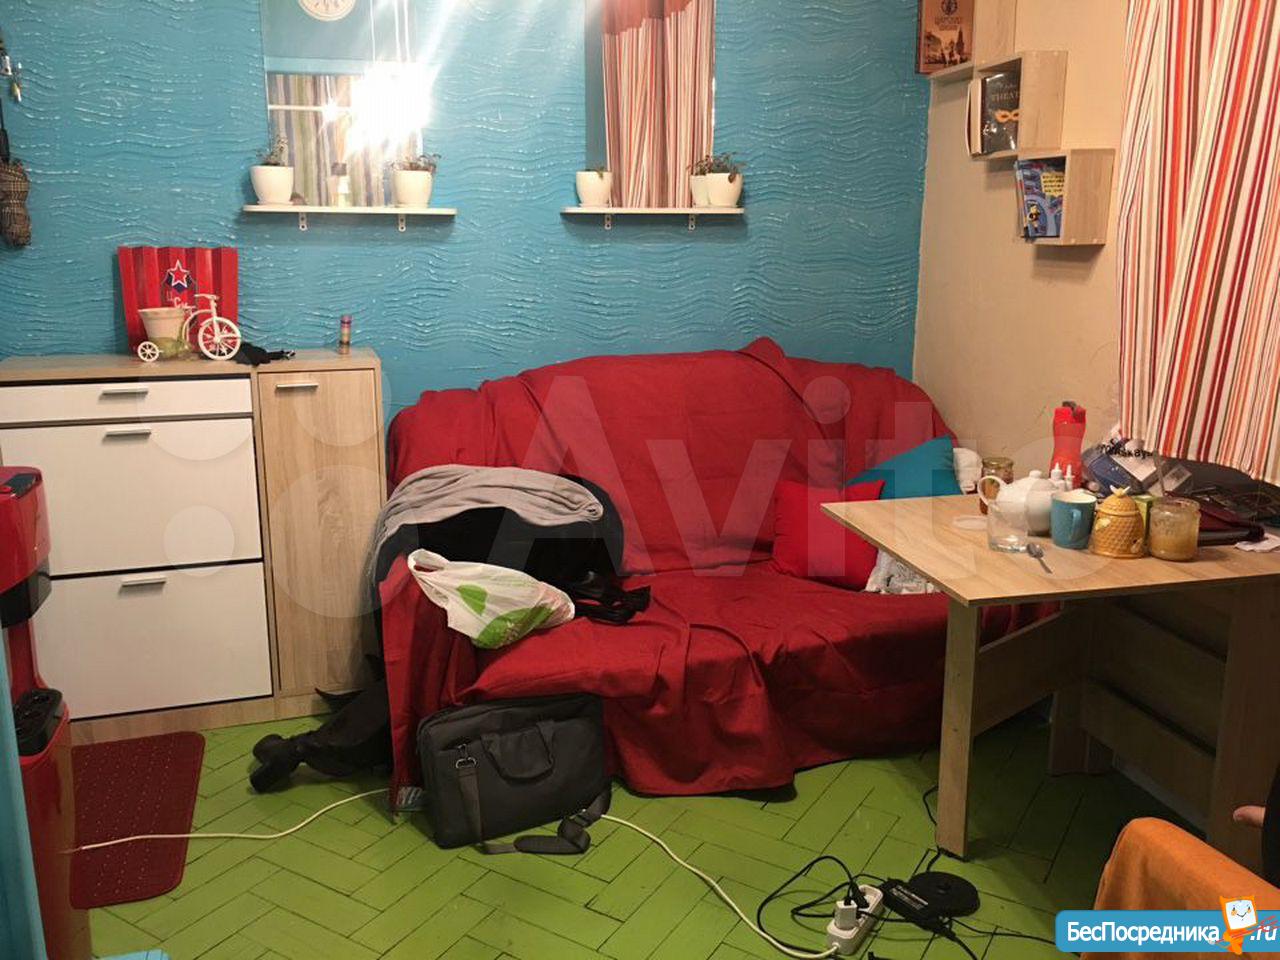 Сниму квартиру в элисте на длительный срок без посредников недорого 1 комнатную квартиру с мебелью